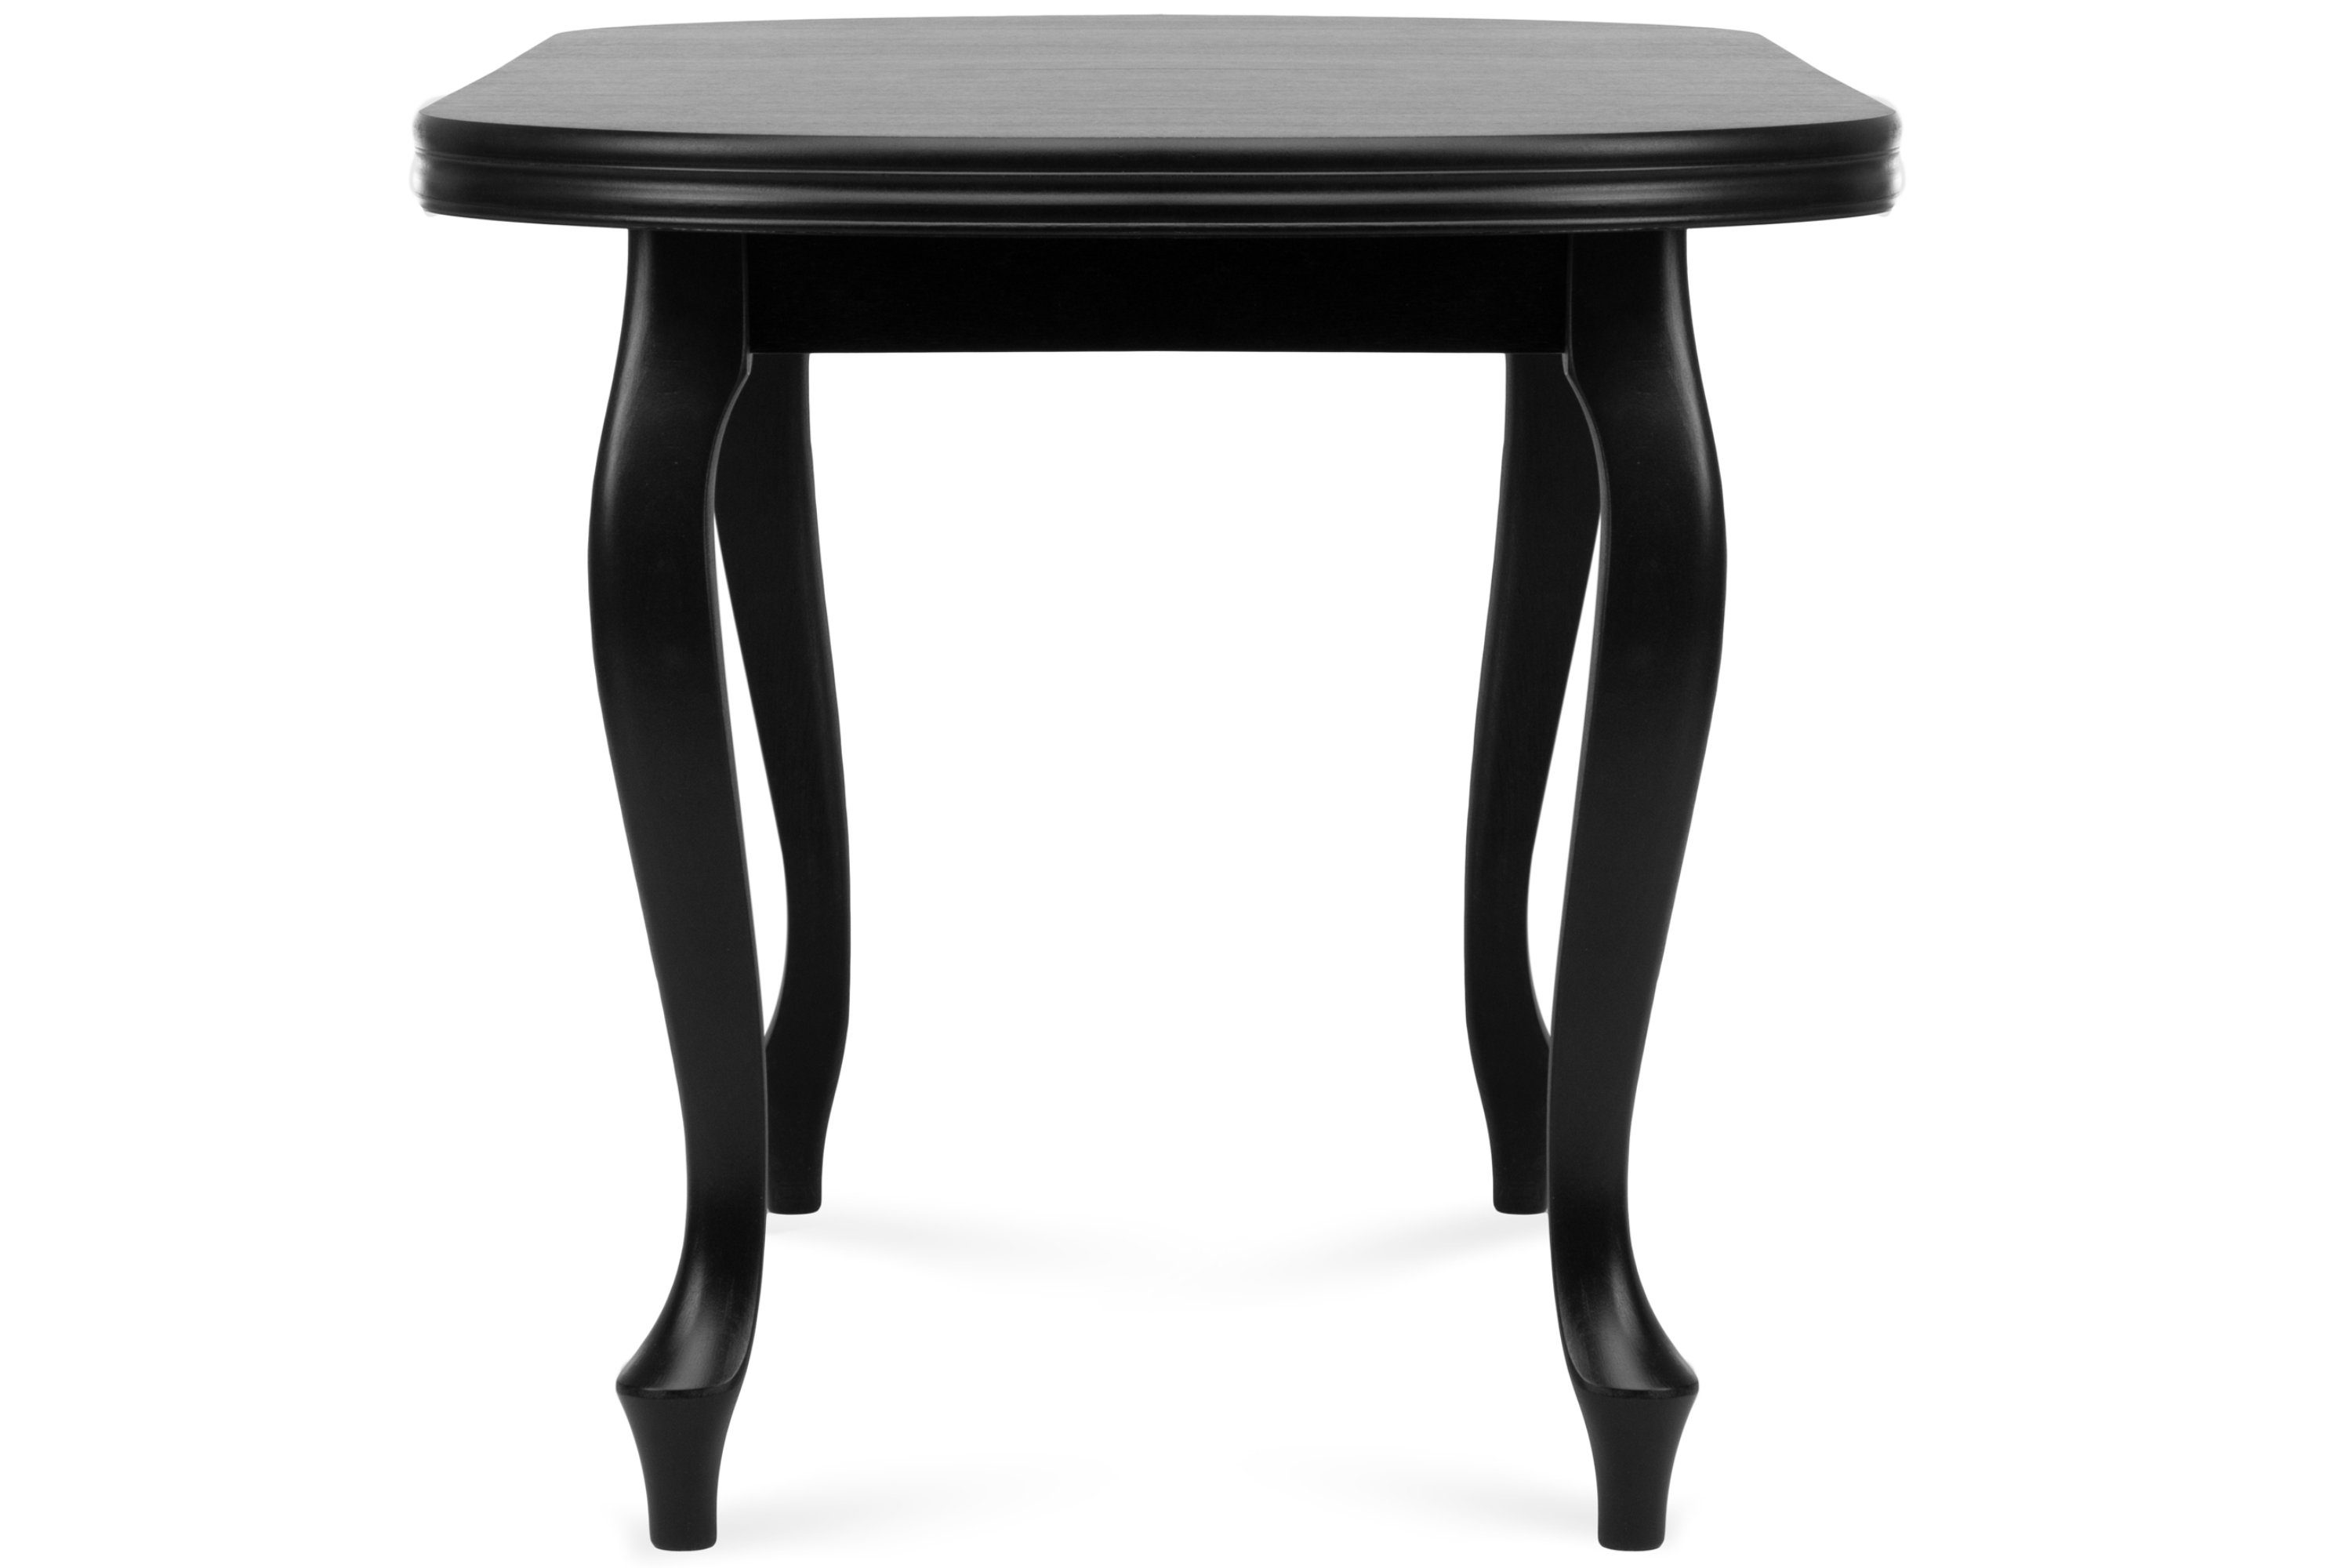 Konsimo Esstisch ALTIS Esszimmertisch Küchentisch schwarz schwarz oval 160x90cm, ausziehbar | schwarz | bis 200cm